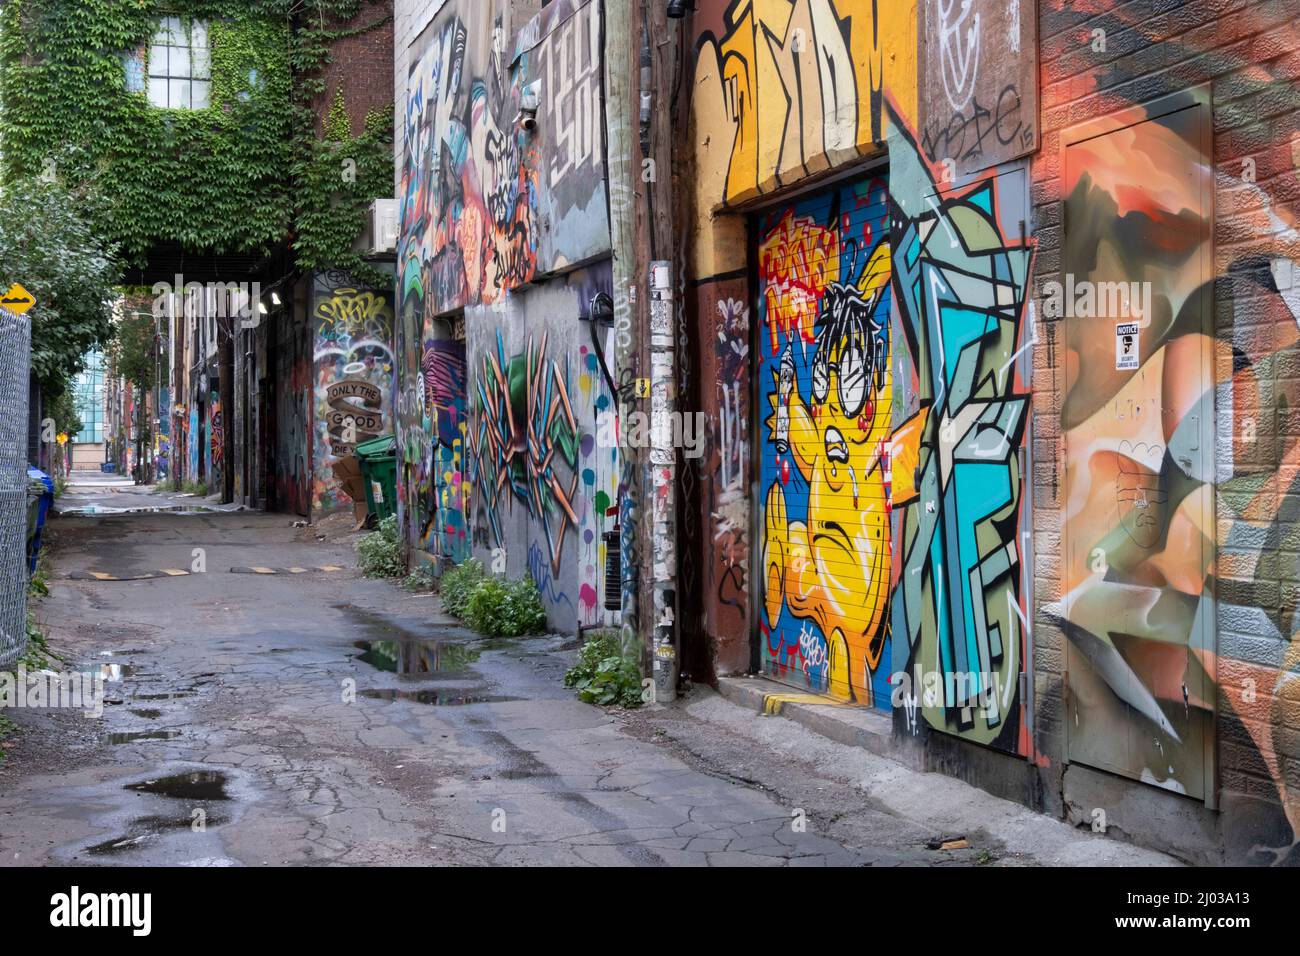 L'infâme Graffiti Alley de Toronto dans le quartier de la mode, Toronto, Ontario, Canada, Amérique du Nord Banque D'Images